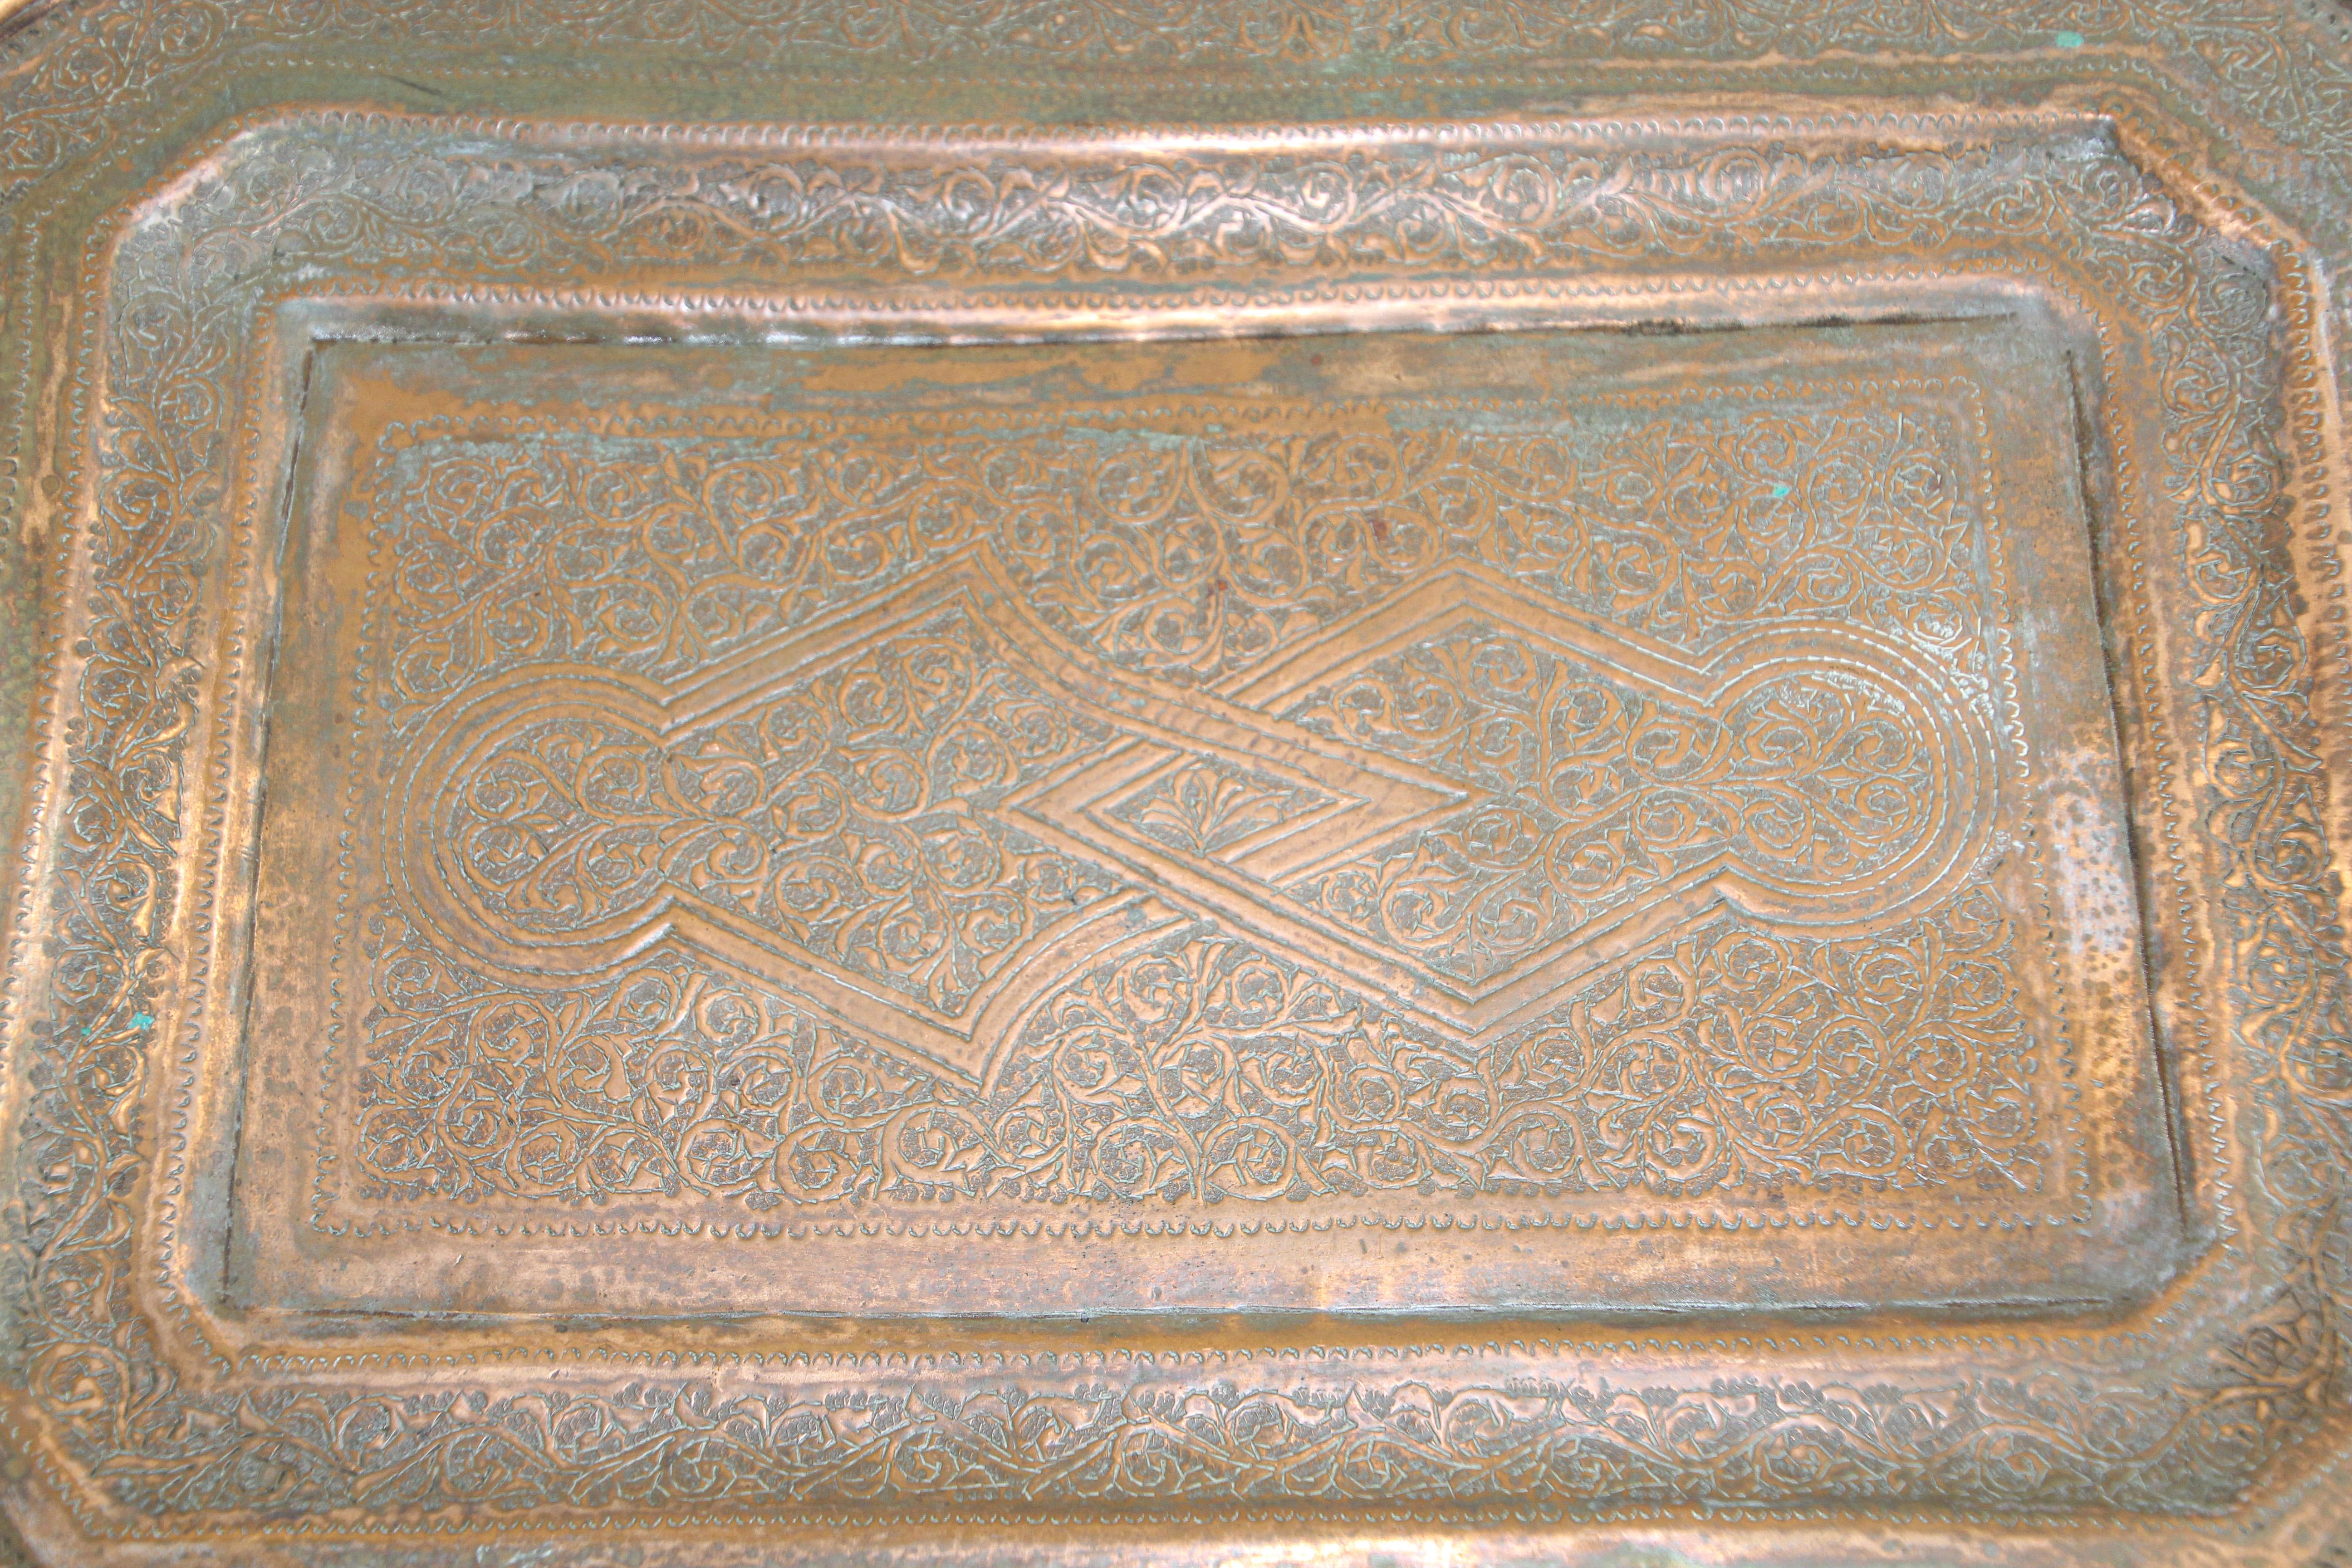 Plateau de service octogonal en cuivre persan du Moyen-Orient.
Plateau en cuivre martelé à la main avec de très beaux motifs mauresques.
Dimensions :
13 